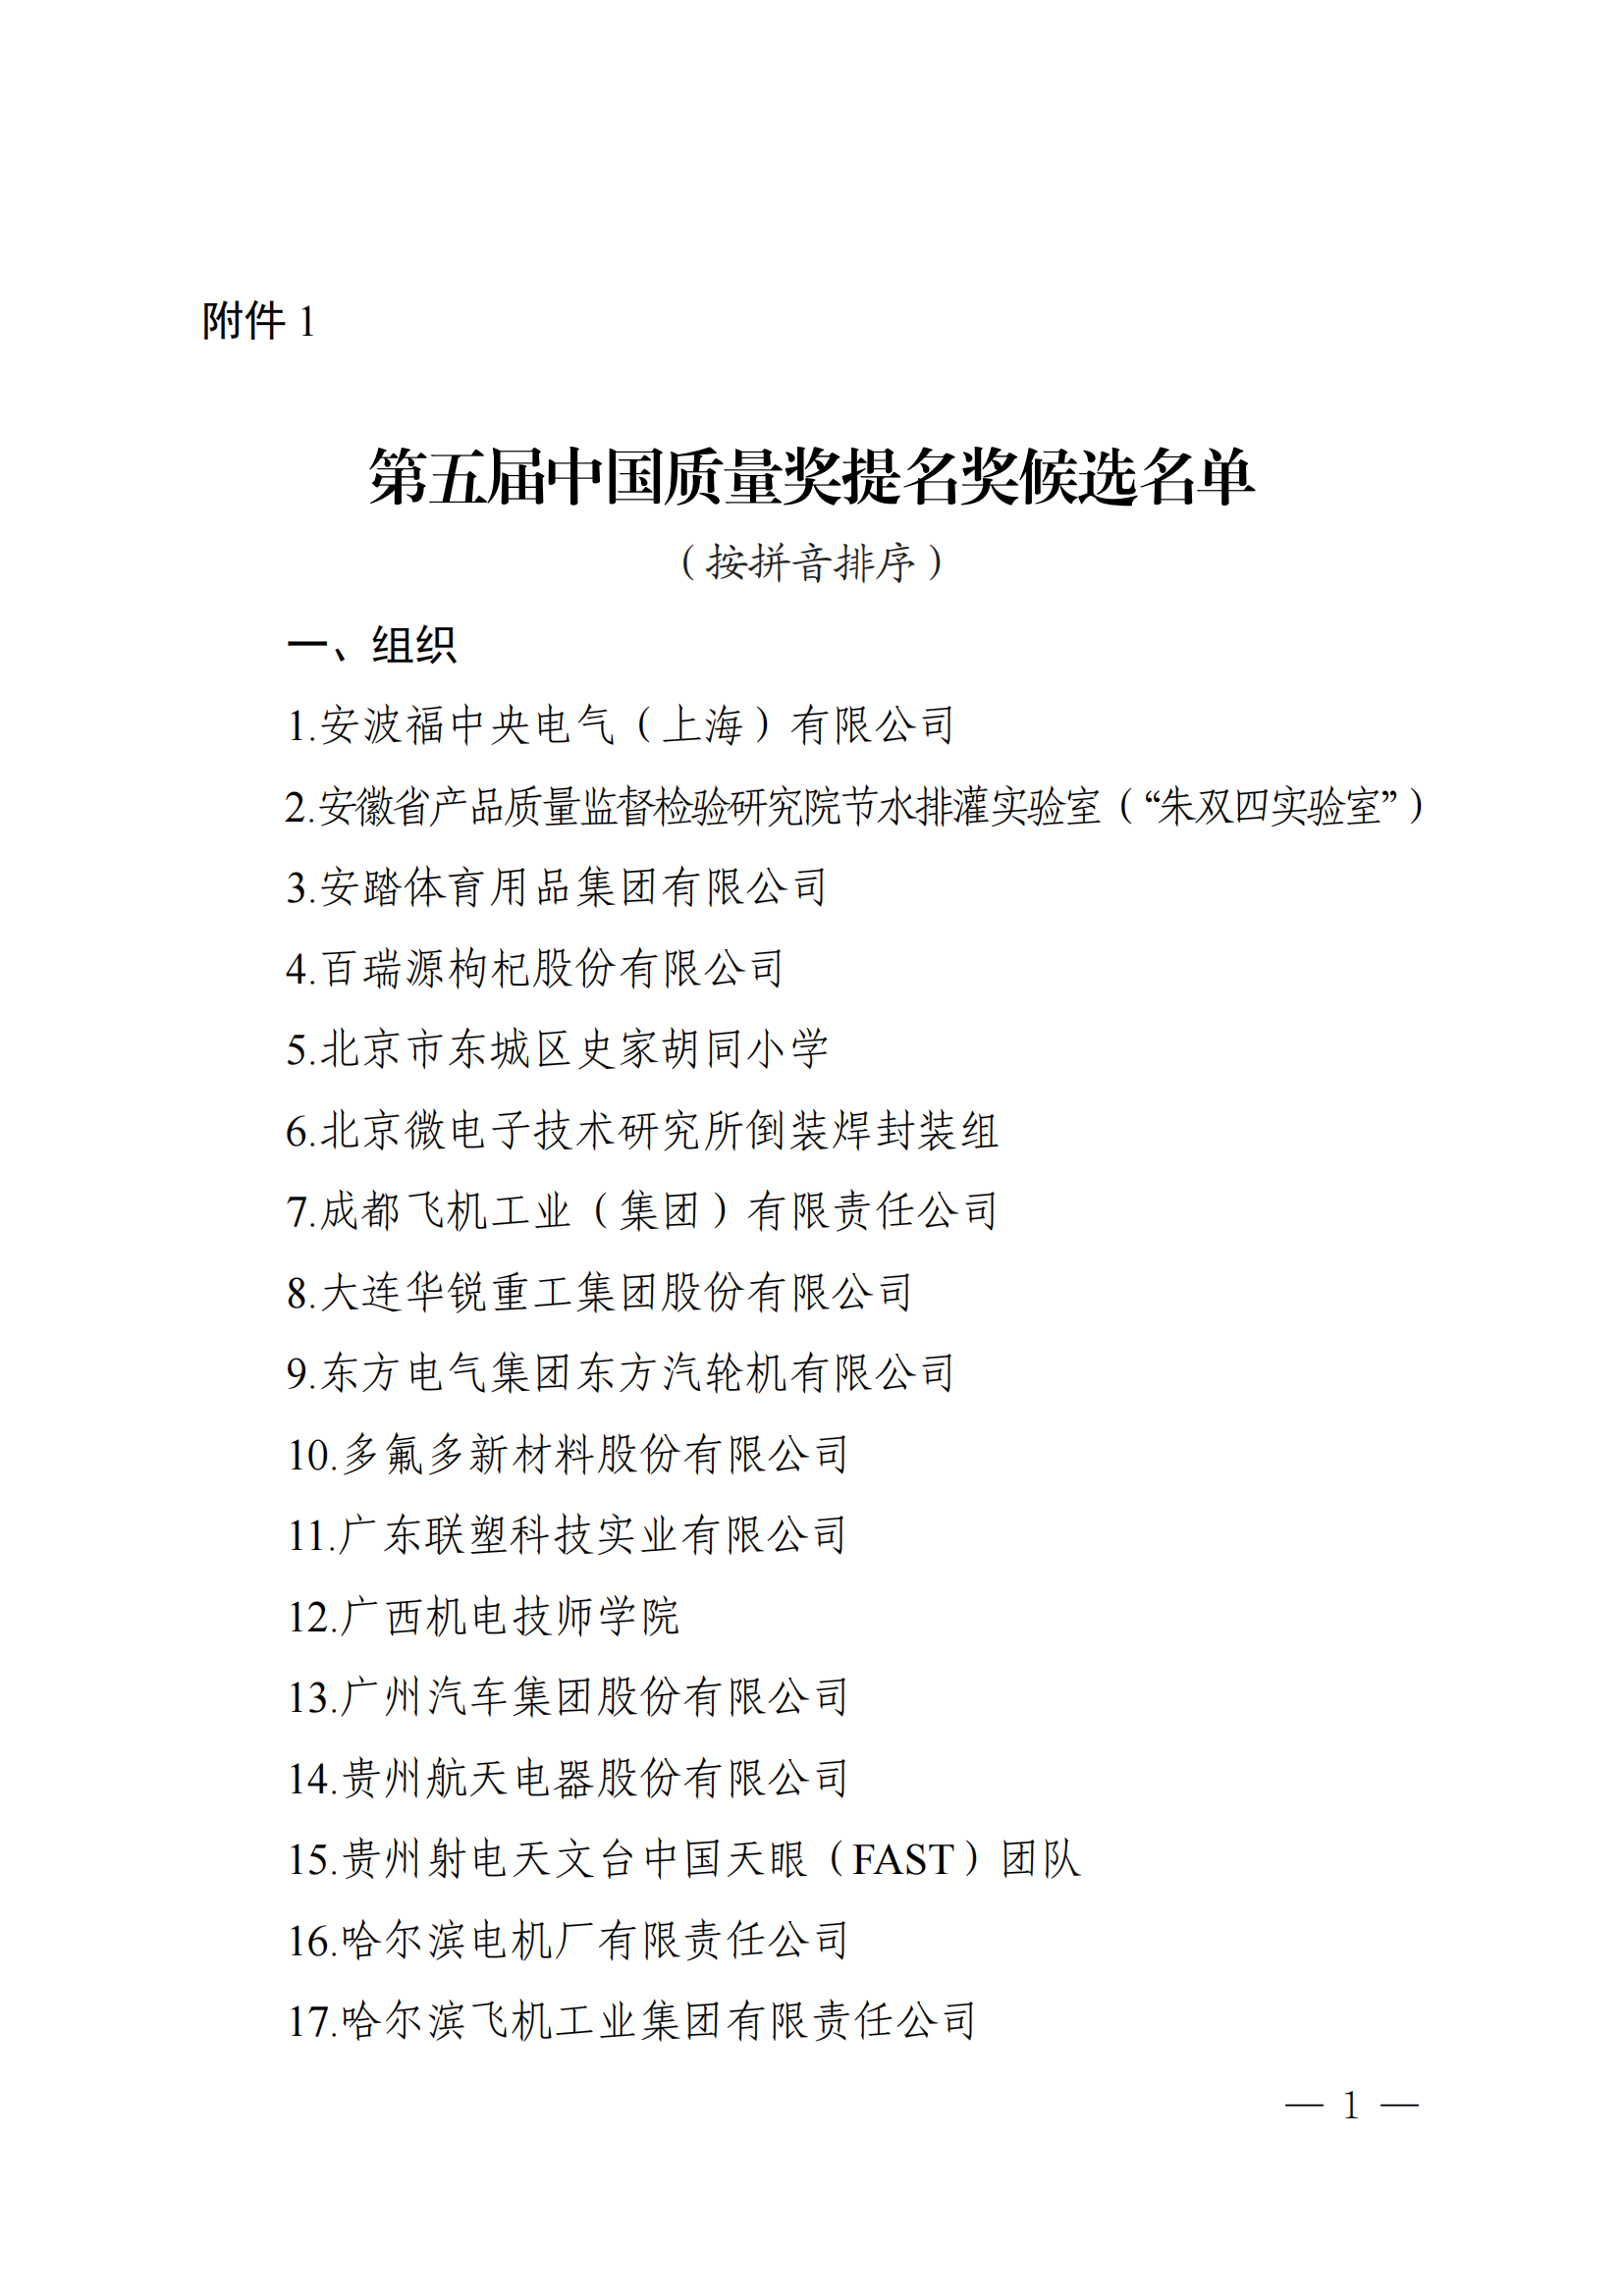 第五届中国质量奖提名奖和中国质量奖候选名单公示